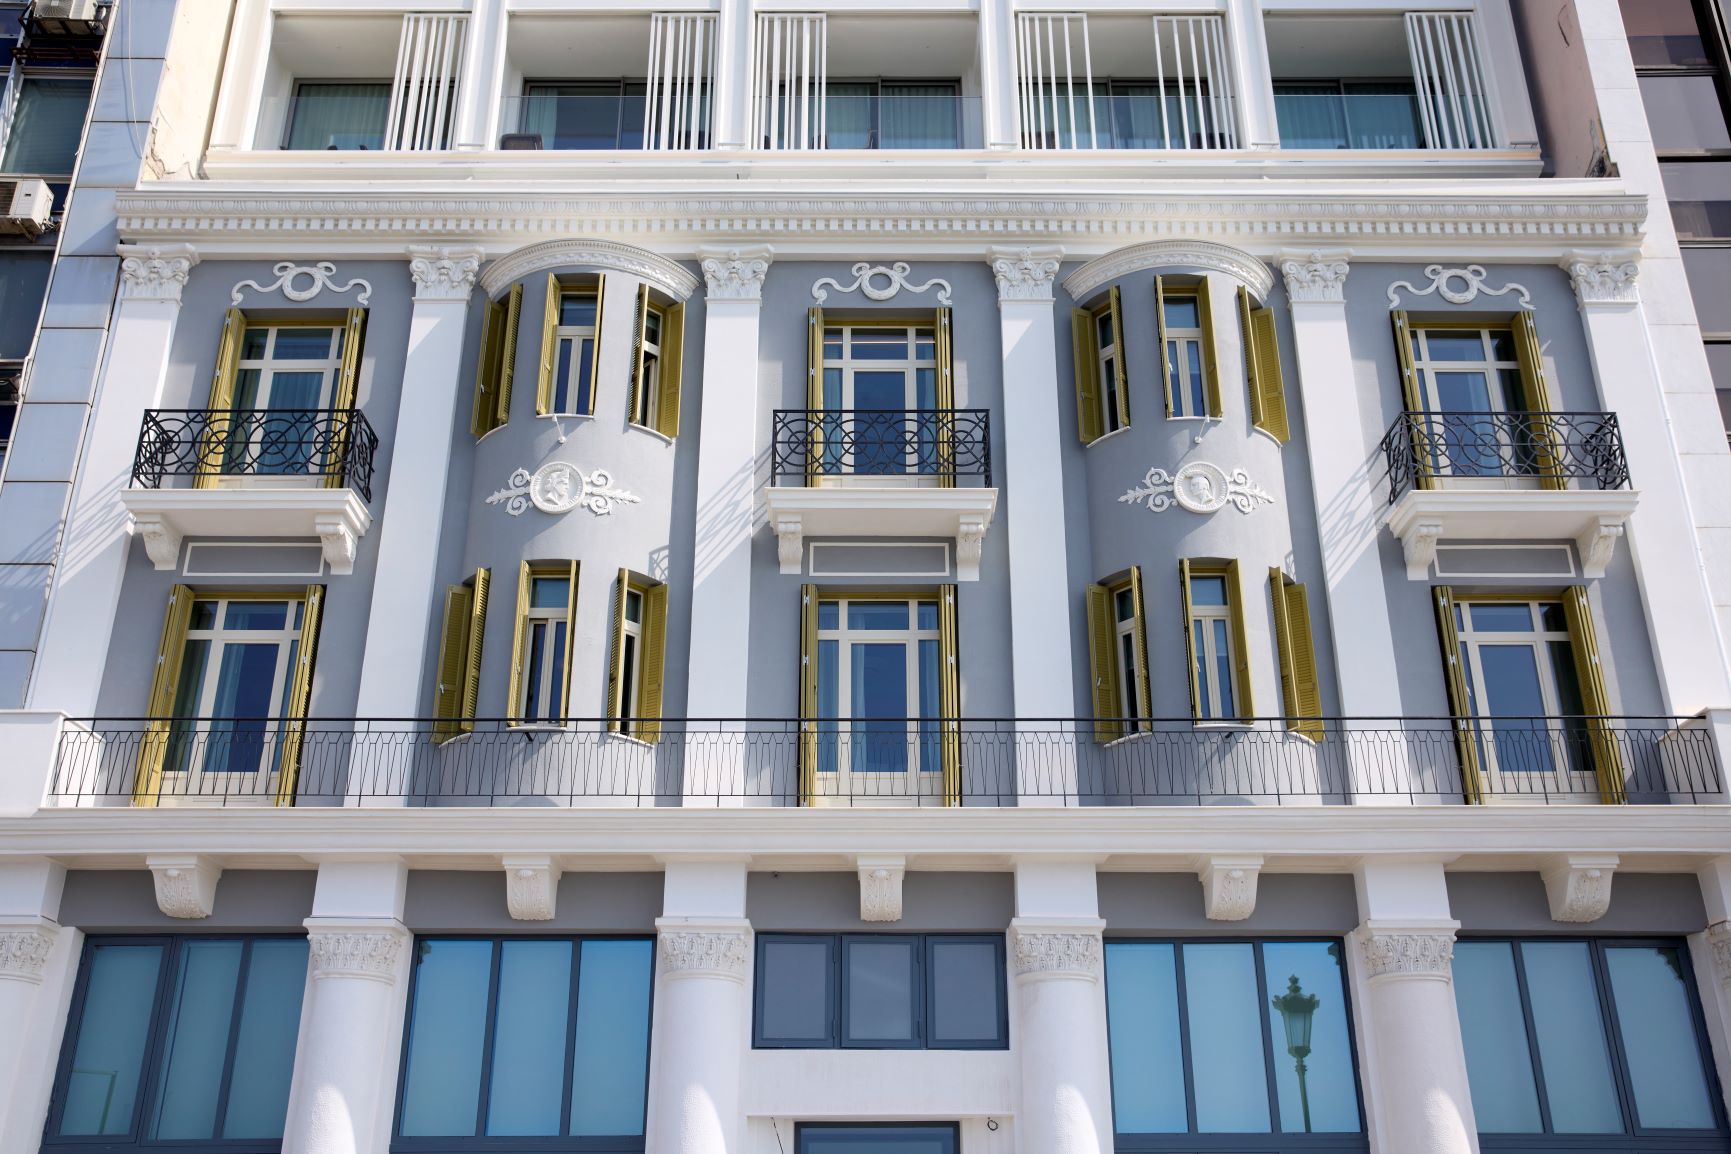 Θεσσαλονίκη: Αυτό είναι το νέο ξενοδοχείο 5 αστέρων που ανοίγει – Οι εικόνες που εντυπωσιάζουν